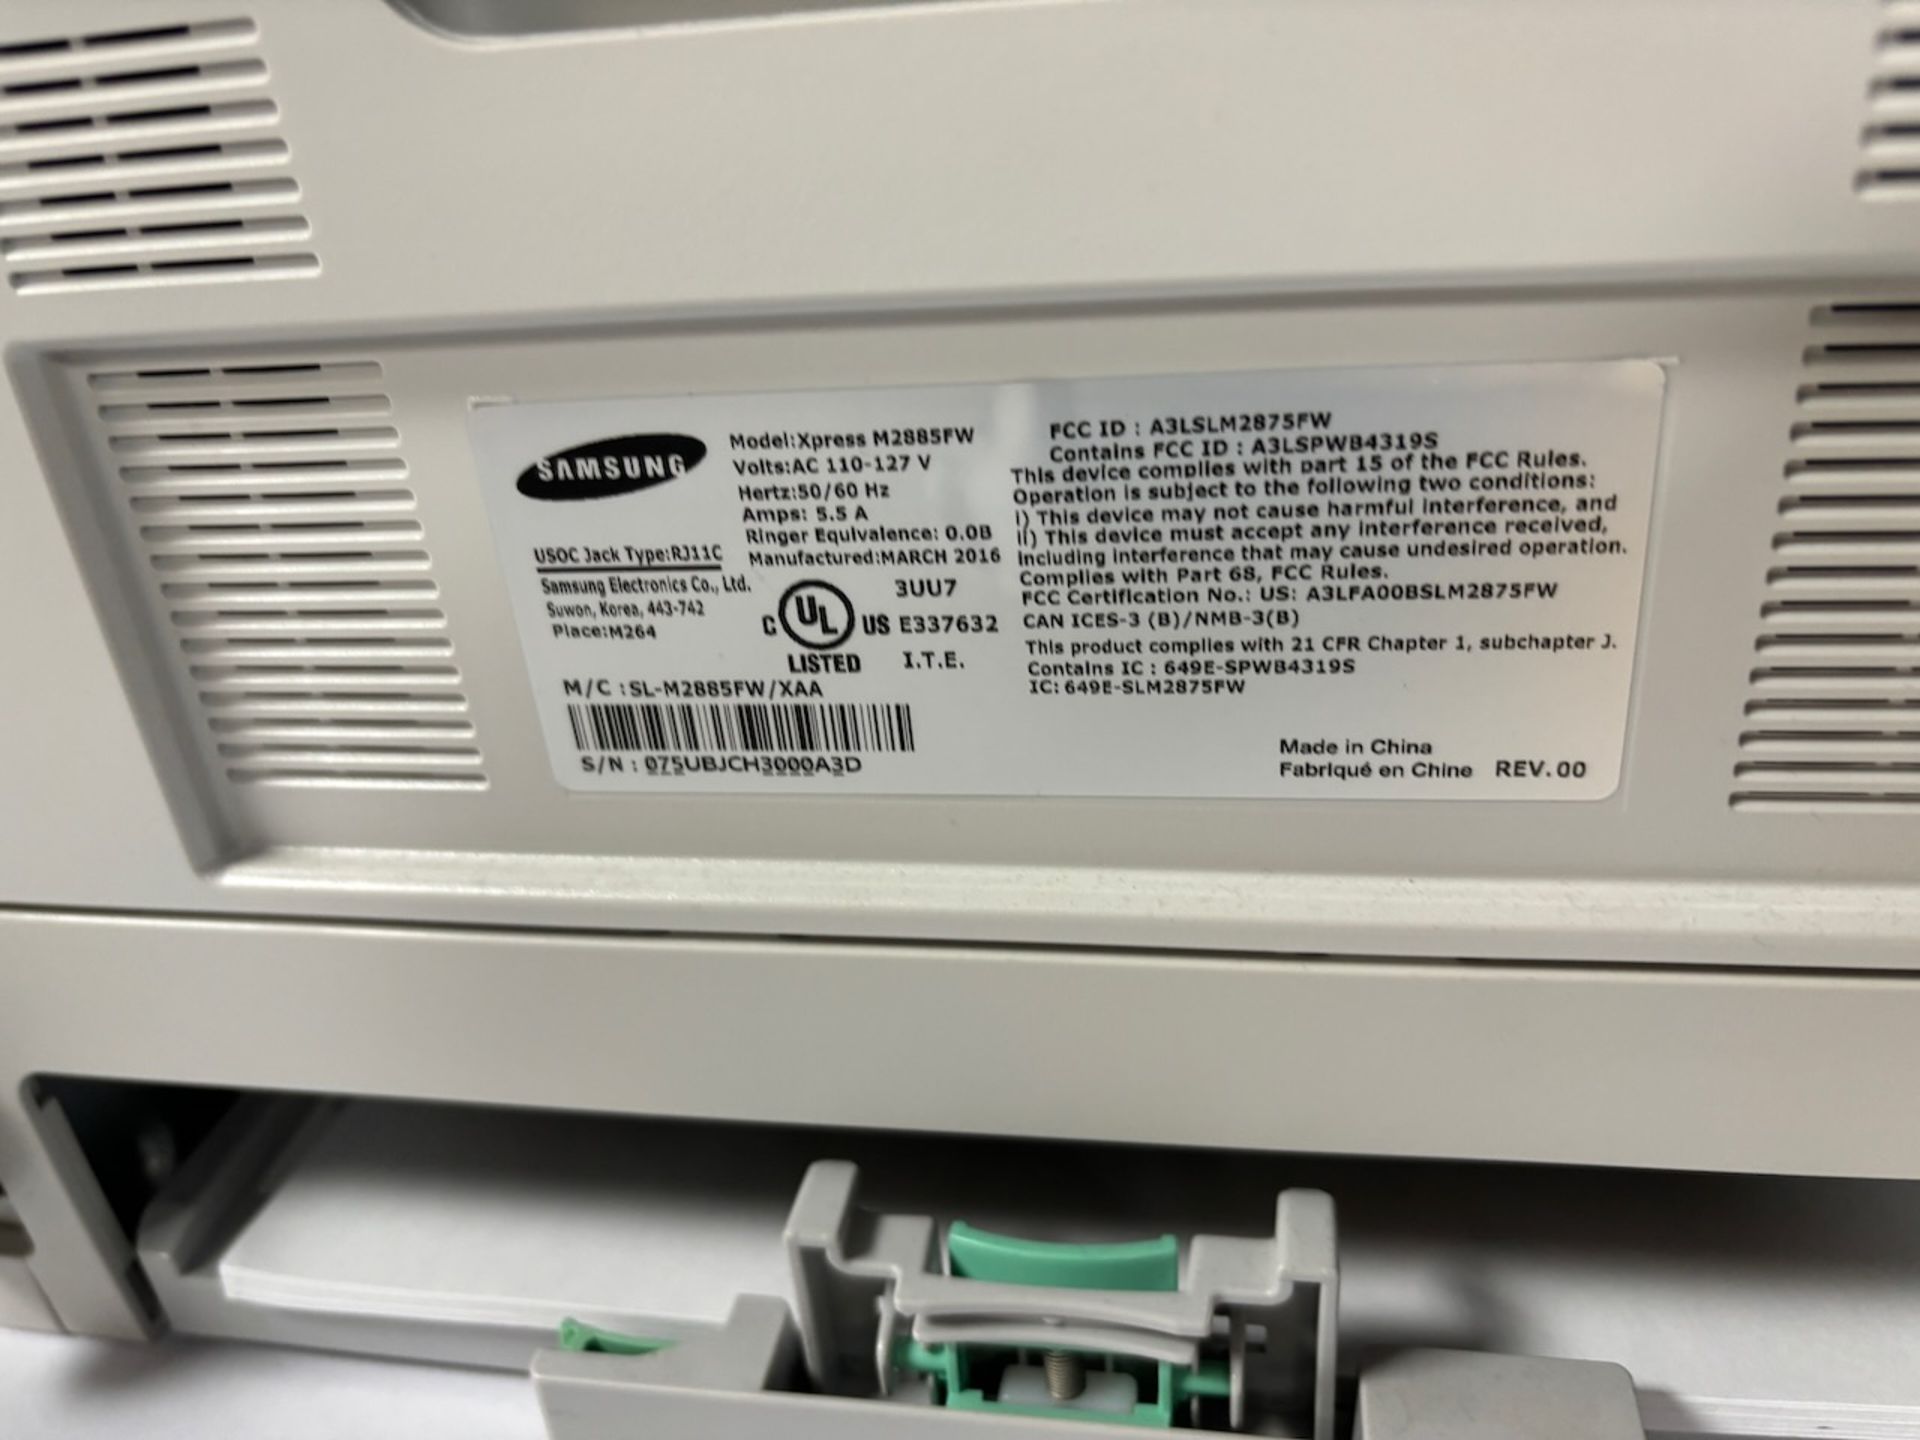 Samsung multifunction laser printer - Image 4 of 4